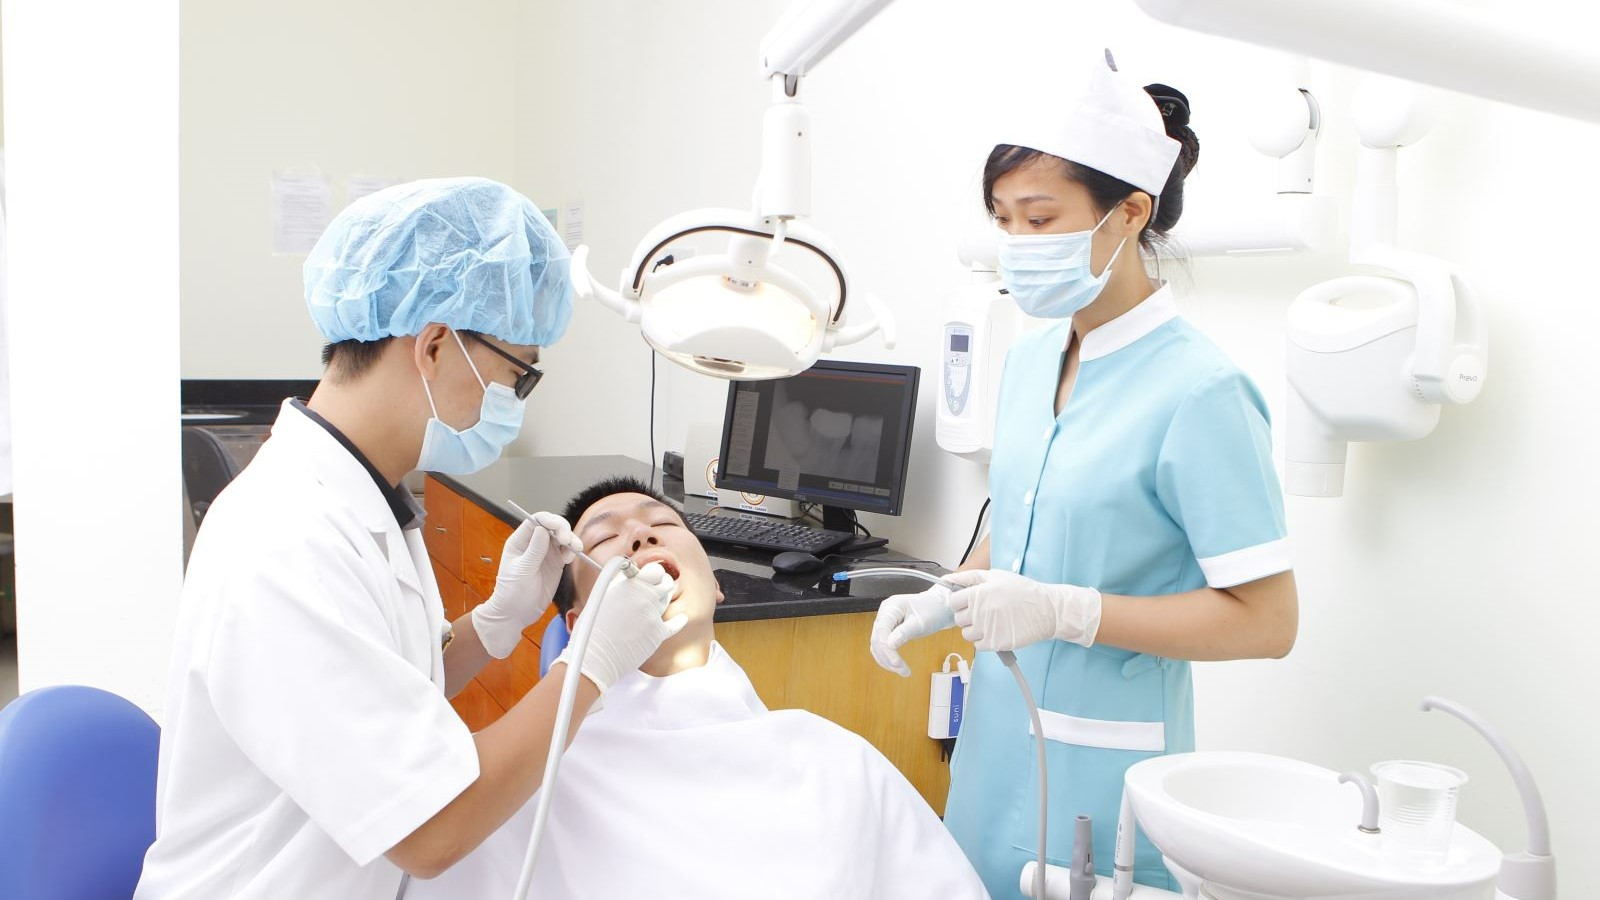 Bệnh viện nào tốt và uy tín để nhổ răng khôn?
